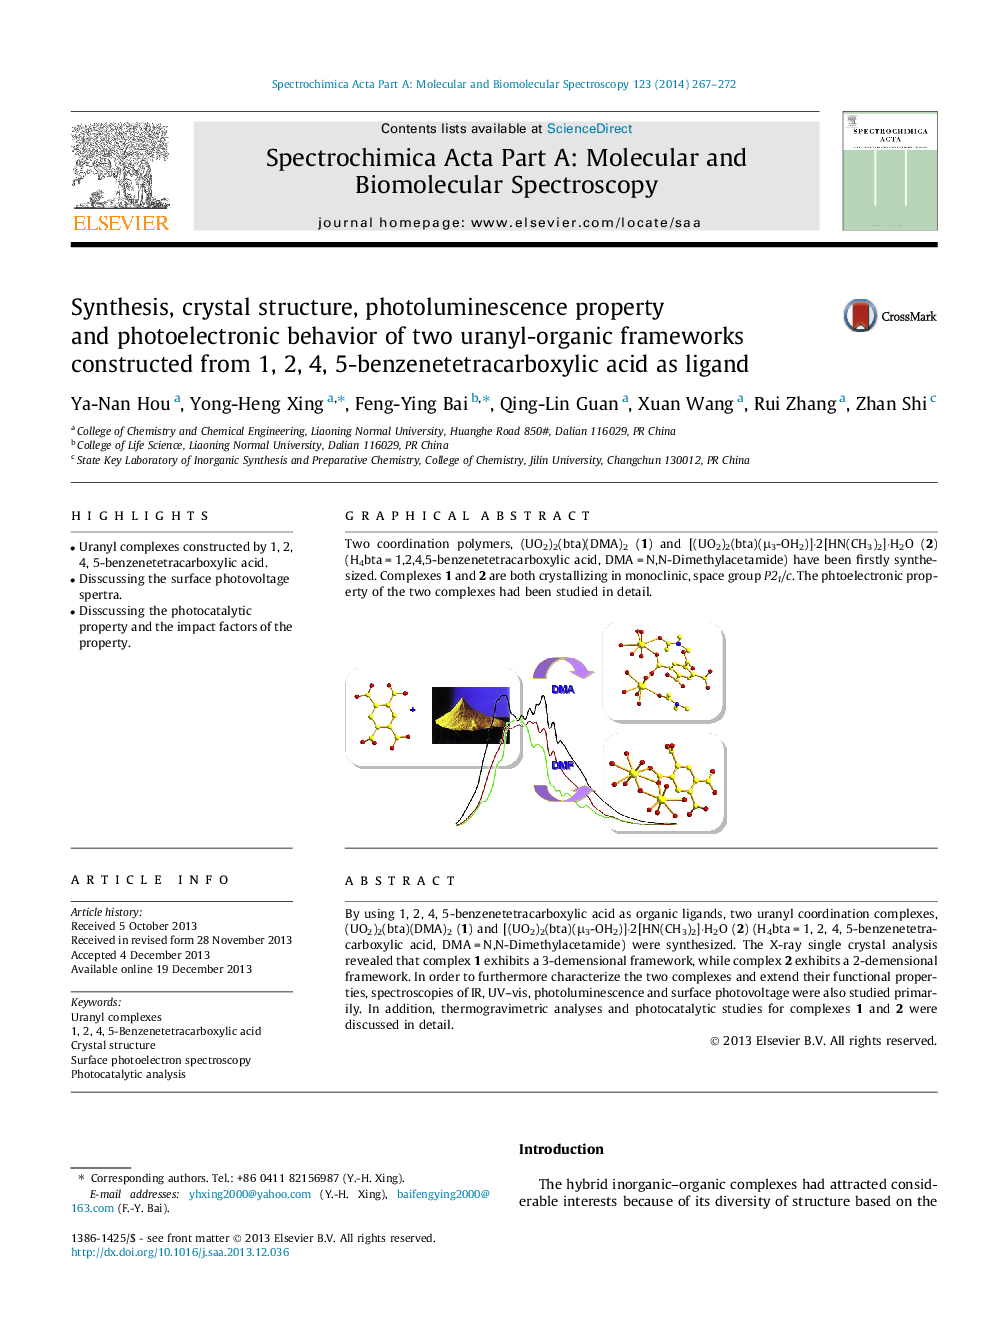 سنتز، ساختار بلوری، خواص فوتولومینسانس و رفتار فوتوالکتریک دو قاب اورانیل آلی ساخته شده از 1، 2، 4، 5-بنزن تتراکربوکیلیک اسید به عنوان لیگاند 